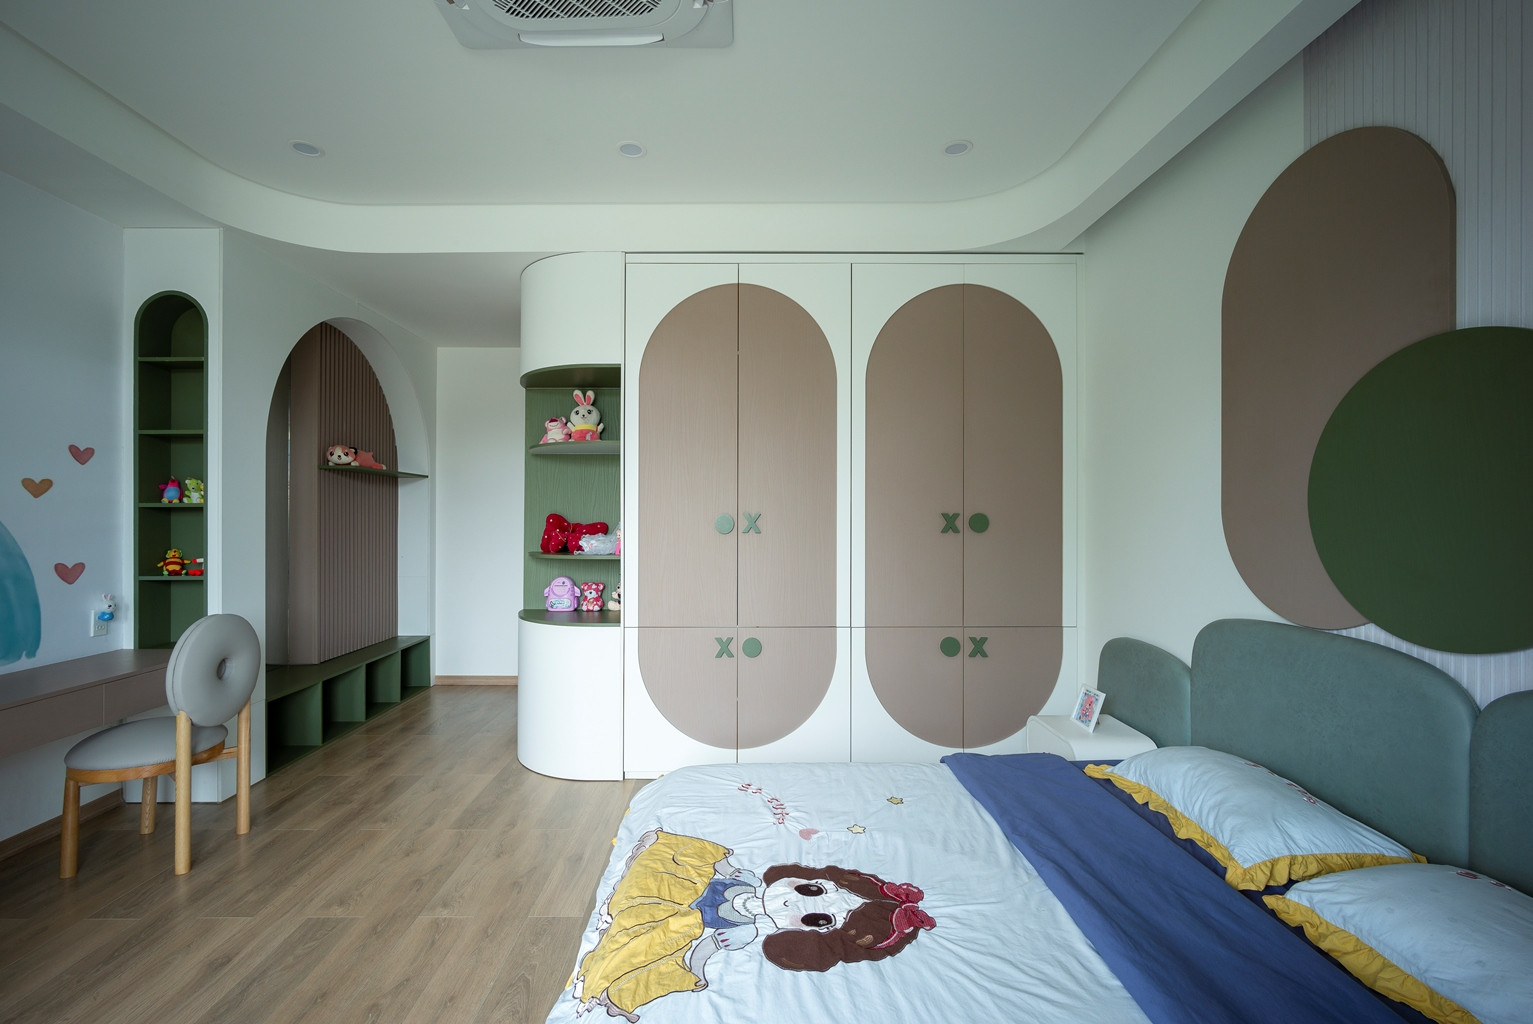 Phòng ngủ dành cho trẻ nhỏ được thiết kế với các đường cong nhẹ nhàng, cùng gam màu pastel.